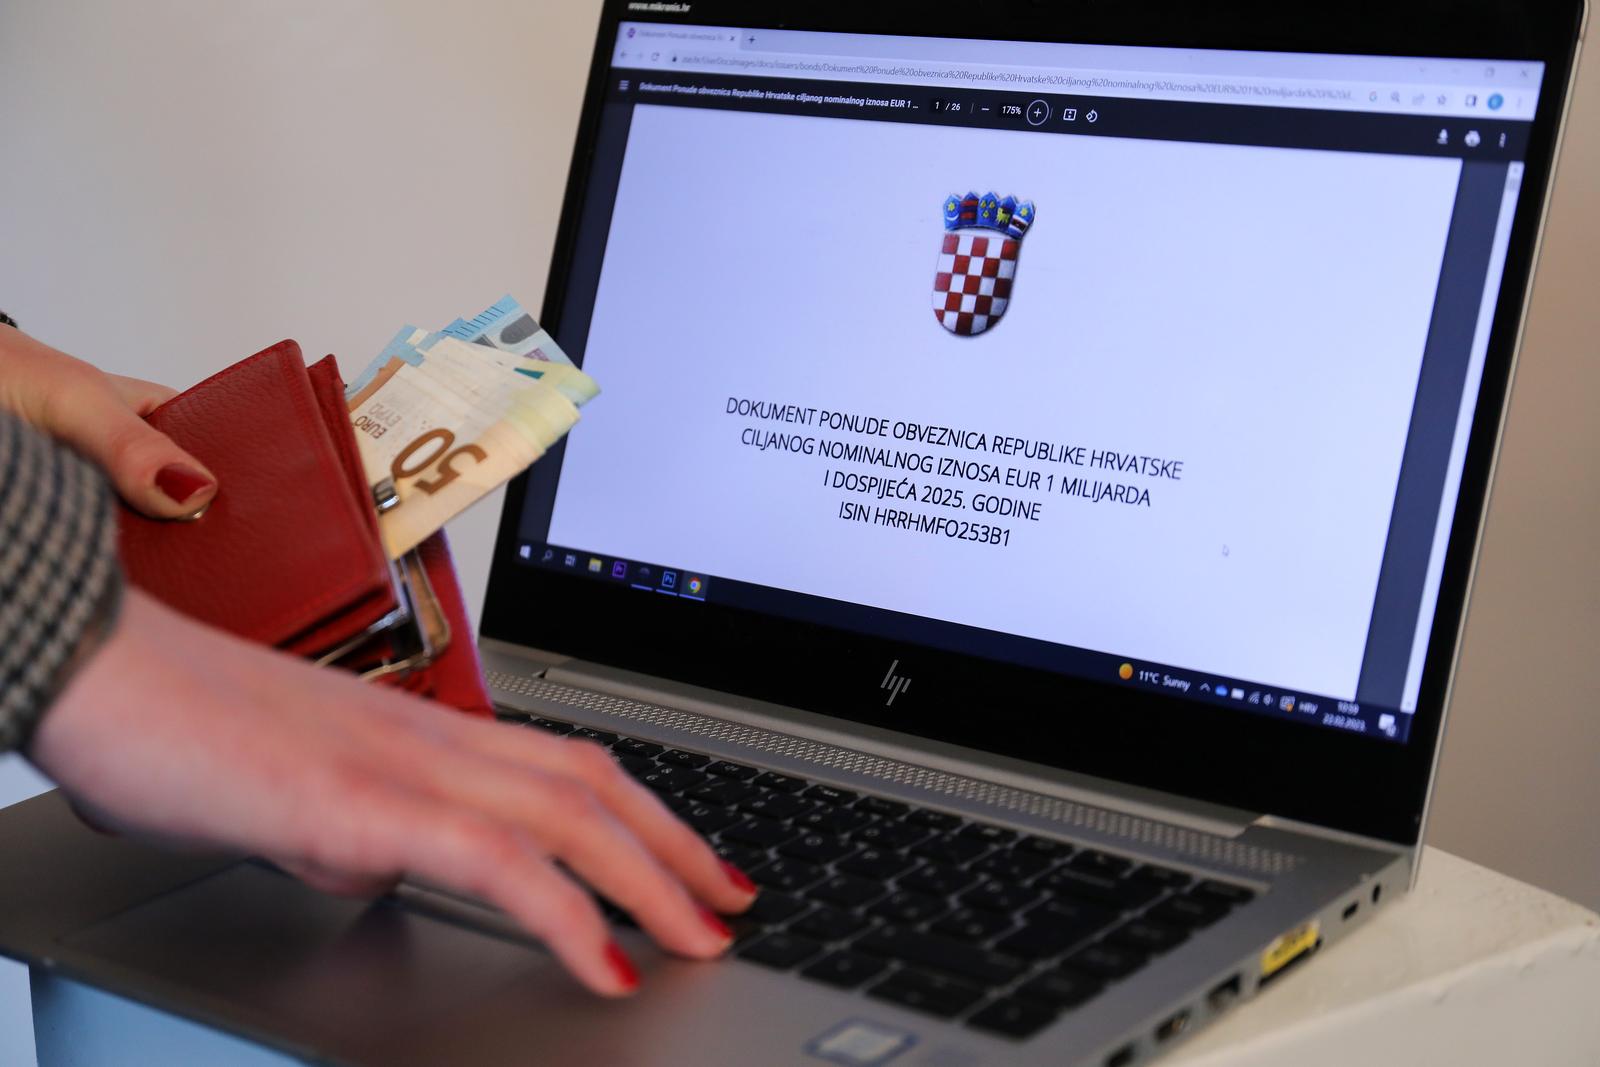 22.02.2023.,Zagreb, Ministarstvo financija objavilo je javni poziv za izdavanje obveznica koje su ponudjene gradjanima. Upis pocinje u srijedu i trajat ce tjedan dana u poslovnicama banaka koje sudjeluju u tom postupku. Najmanji ulog je 500 eura, a rok dospijeca dvije godine. Kamatna stopa je 3,25 posto. Prvim tzv. narodnim obveznicama u novijoj hrvatskoj povijesti Vlada zeli prikupiti milijardu eura Photo: Emica Elvedji/PIXSELL